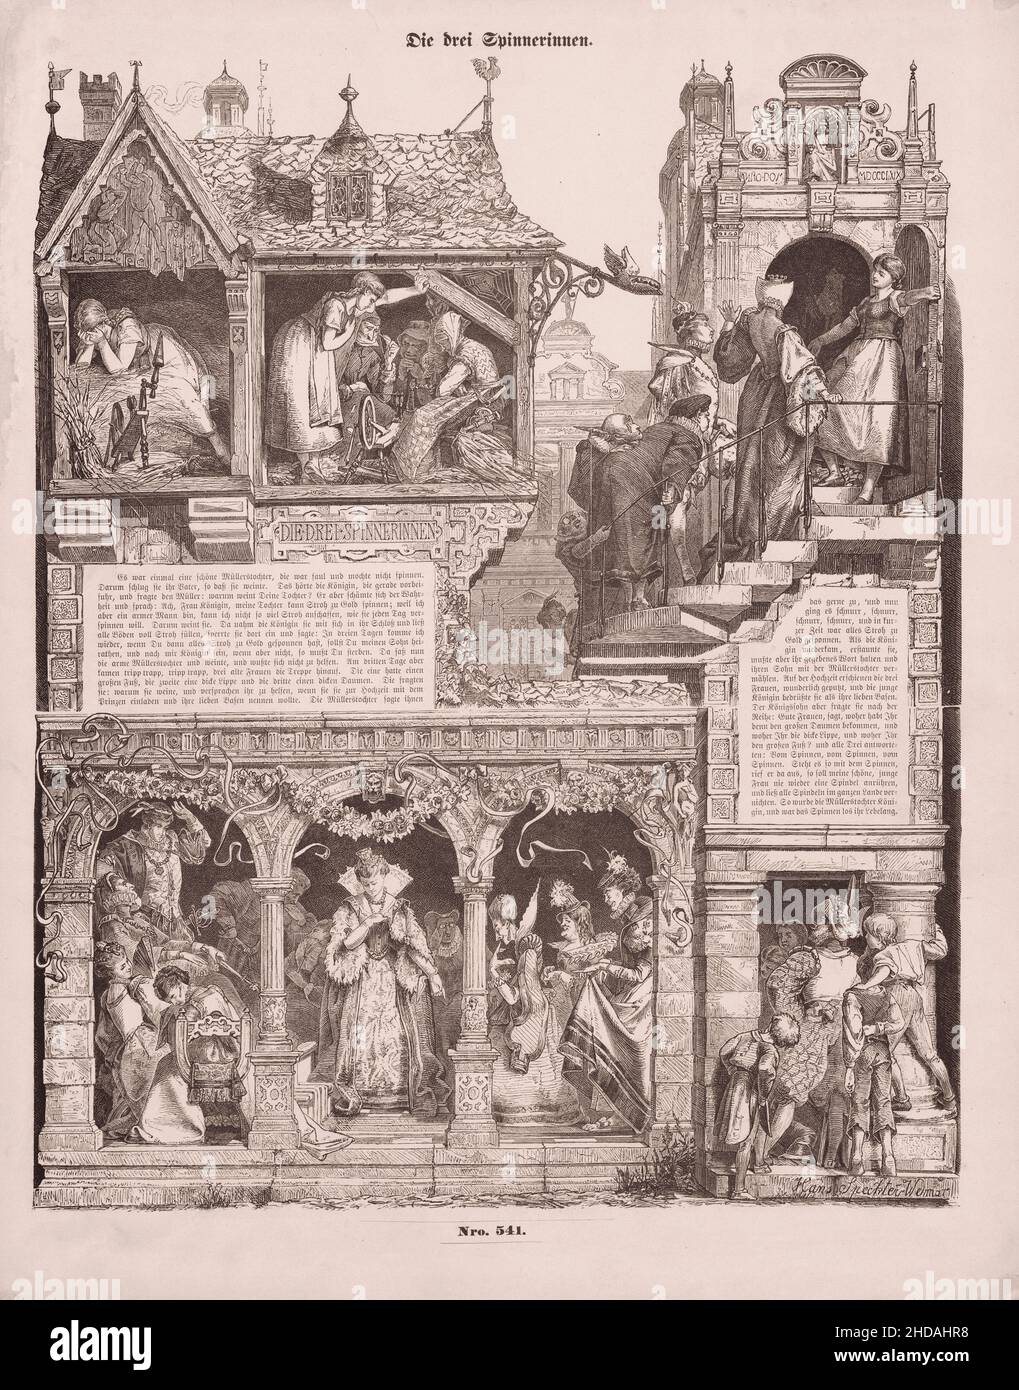 Des illustrations millésimes de 'The Three Spinners' (en allemand : die drei Spinnerinnen), un conte de fées allemand, collectée par les Frères Grimm dans la Fée de Grimm Banque D'Images